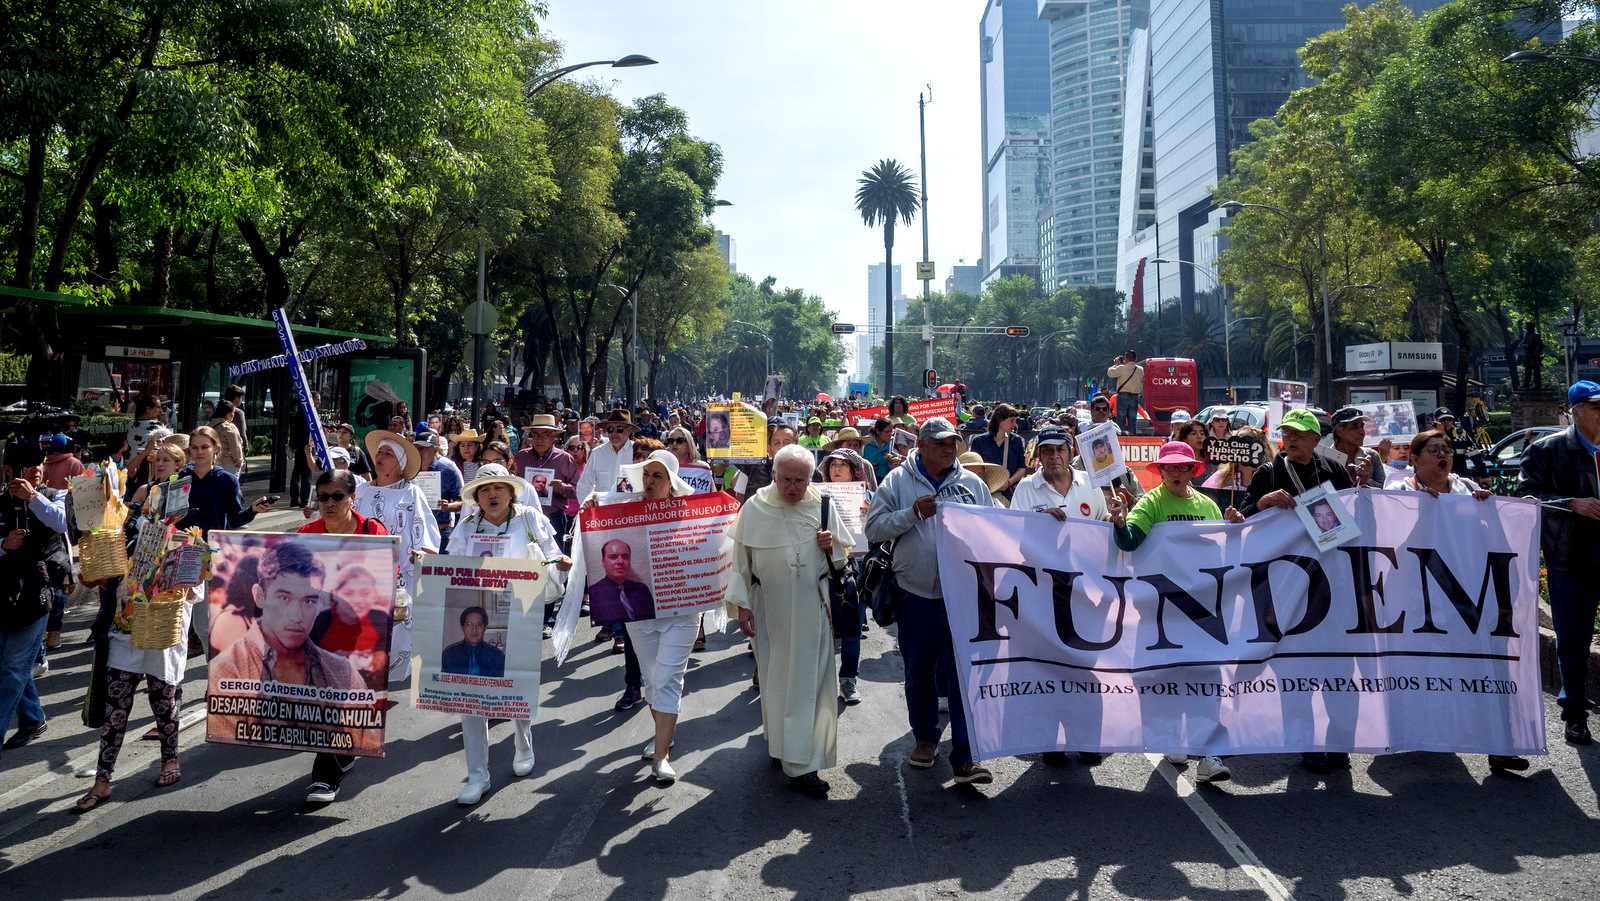 Тысячи маршей по Пасео-де-ла-Реформа требуют суда за насильственно исчезнувших детей, Мехико, 10 мая 2018. (Фото: Хосе Луис Гранадос Цея)